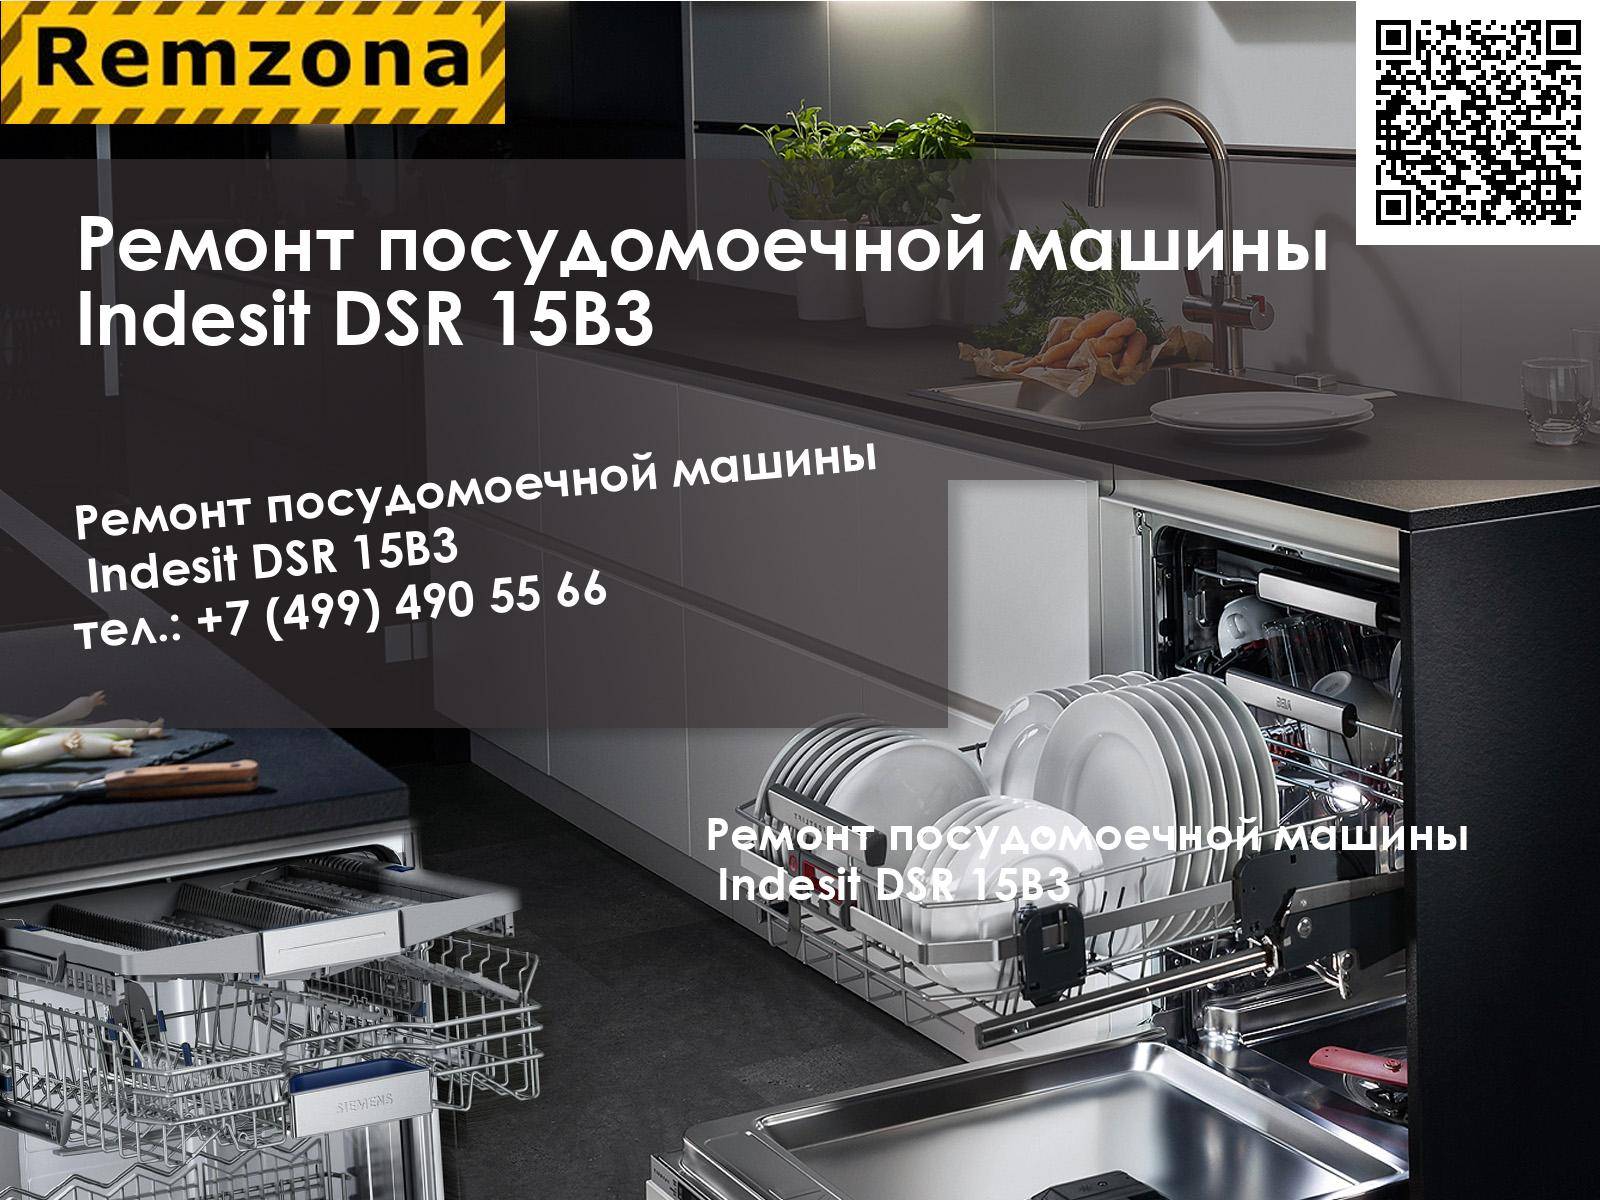 Обзор и сравнение с конкурентами посудомоечной машины indesit dsr 15b3 ru - все об инженерных системах